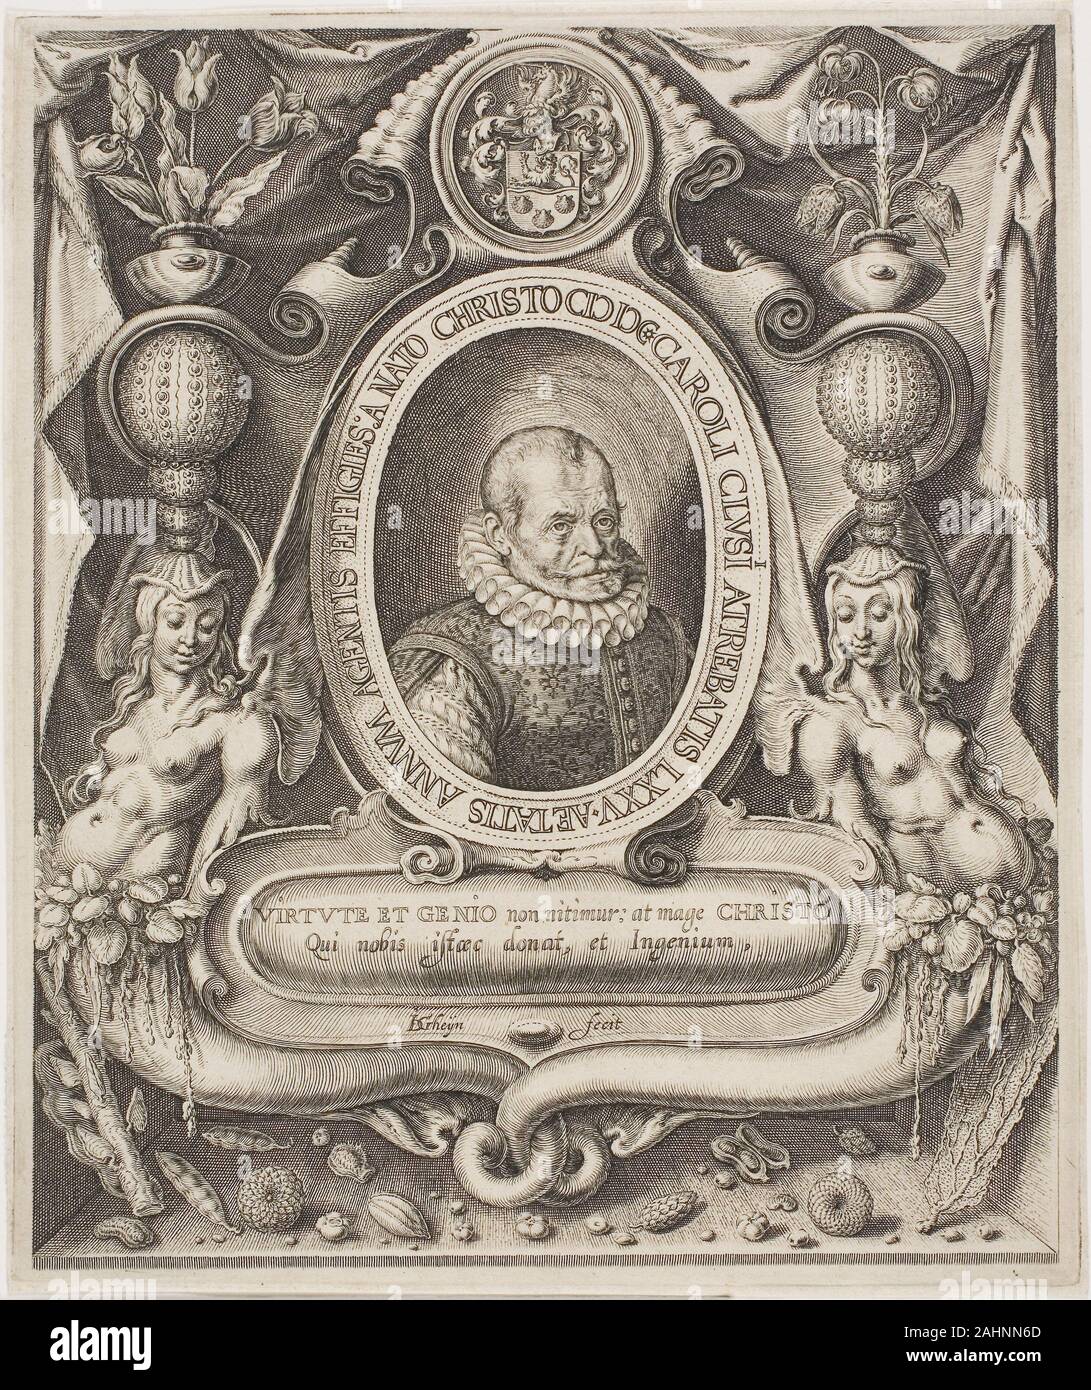 Jacob de Gheyn, II. Carolus Clusius. 1596-1606. Aux Pays-Bas. Gravure, tamponner avec, en noir sur papier vergé crème Jacques de Gheyn formés comme un verre, peintre miniaturiste, et finalement comme graveur en vertu de Hendrick Goltzius. C'est seulement vers 1600 qu'il s'est tourné à partir de la gravure à la peinture. Carolus Clusius, ici, était un botaniste français qui, dans ses dernières années, cam à Leiden, où la culture de tulipes a marqué le début de la Dutch tulip-ampoule de l'industrie. Banque D'Images